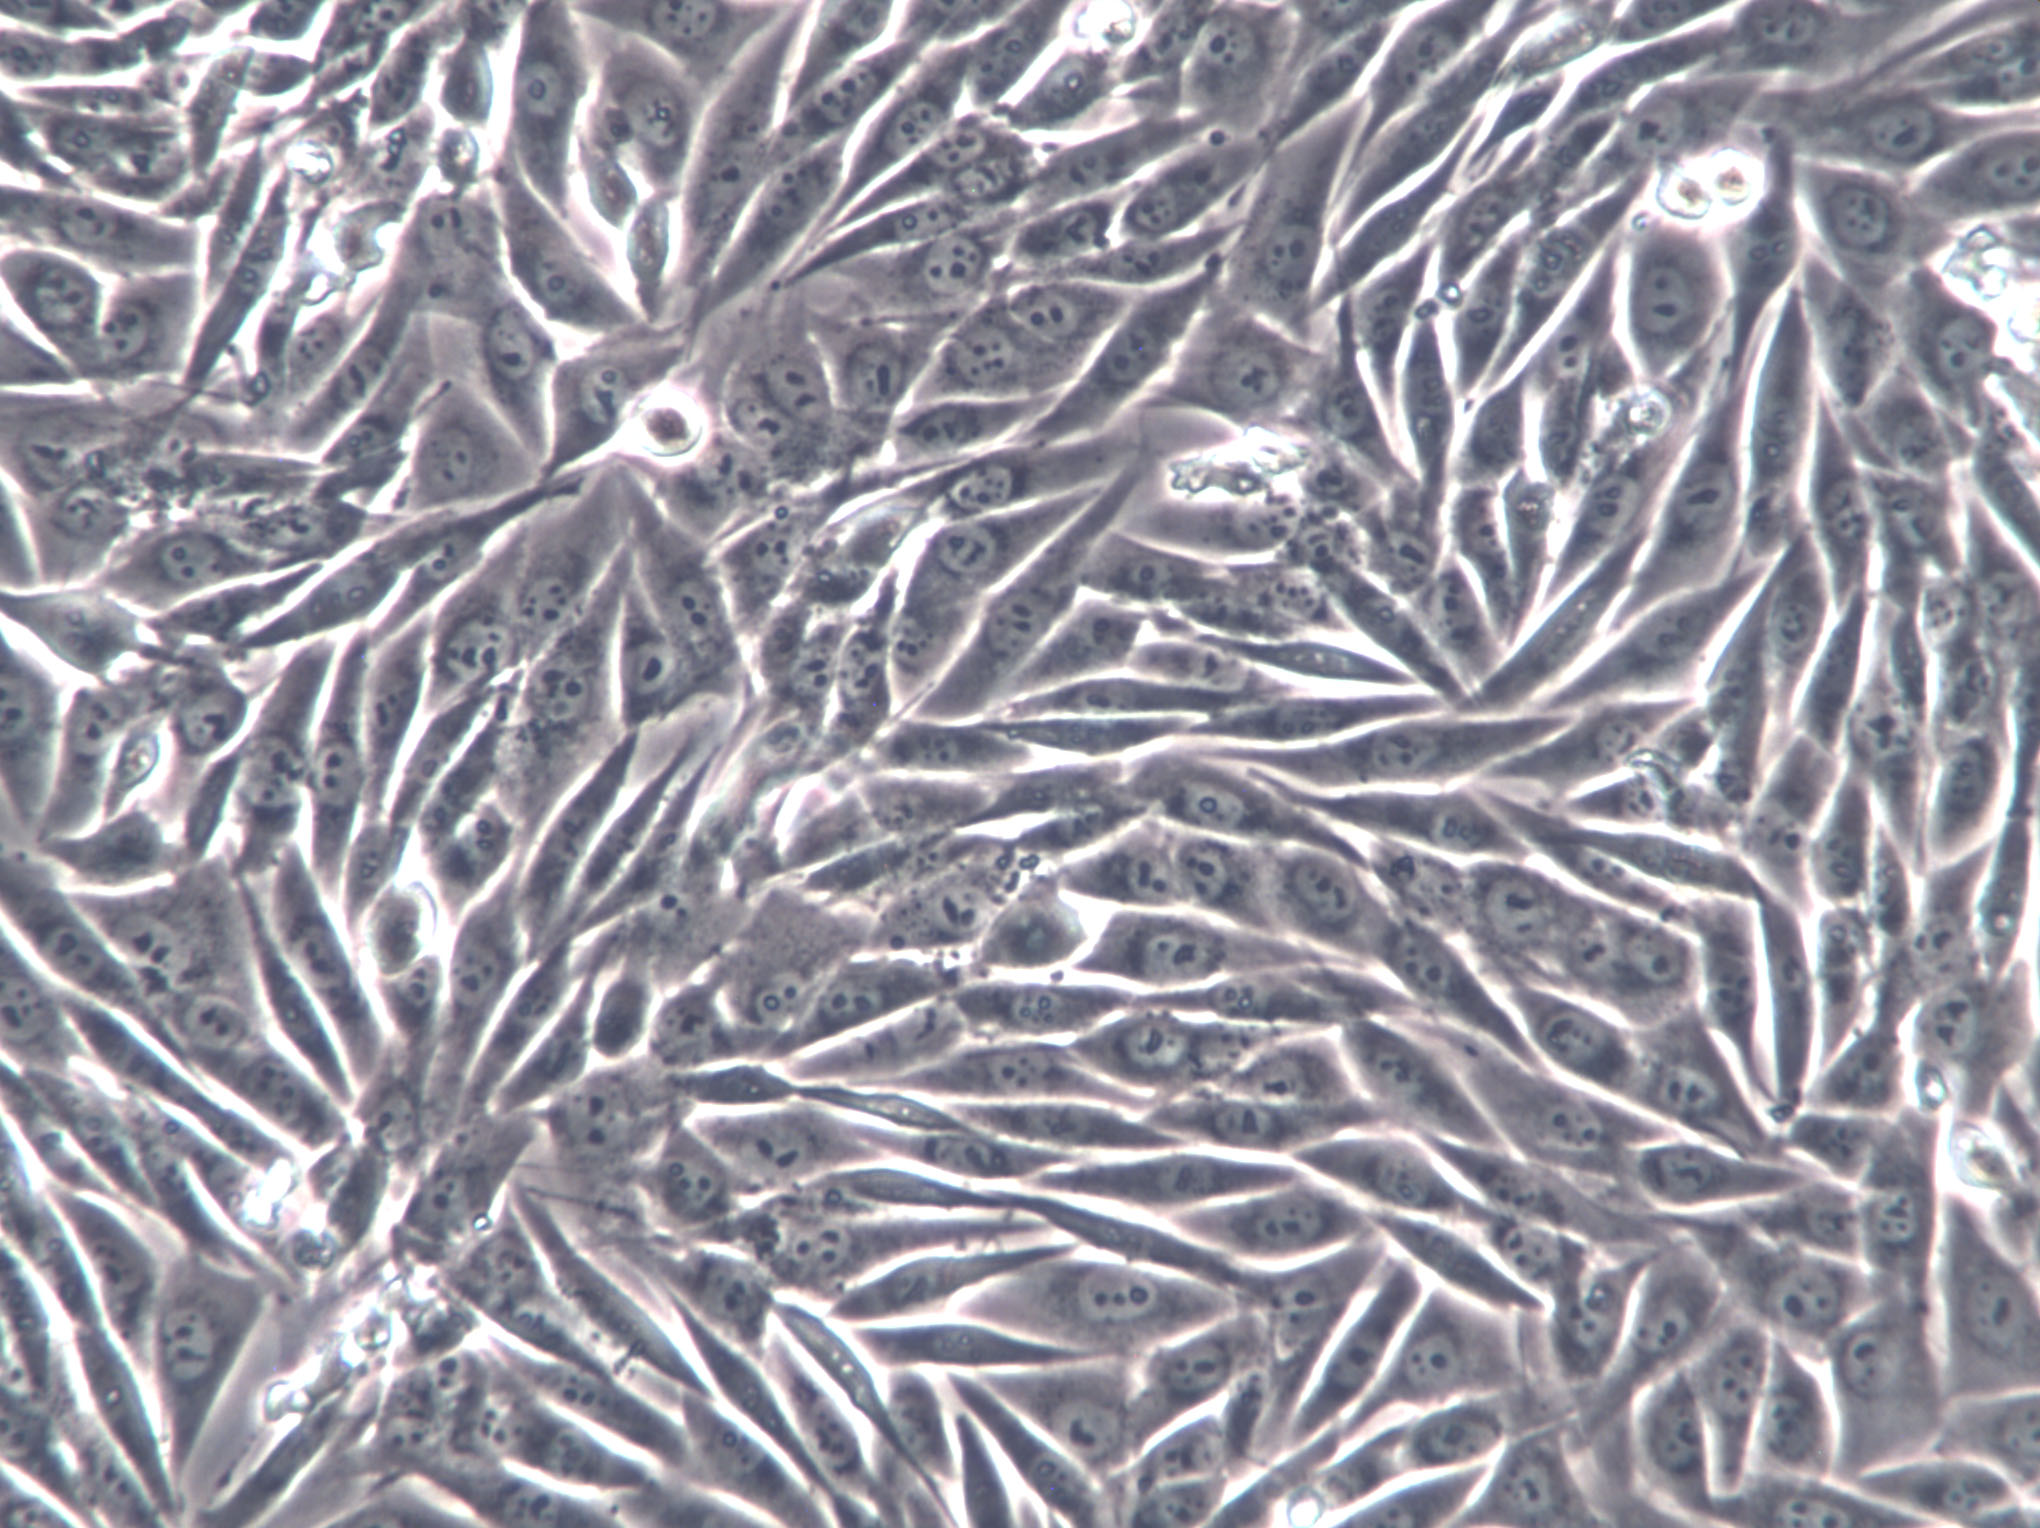 腺上皮细胞图片